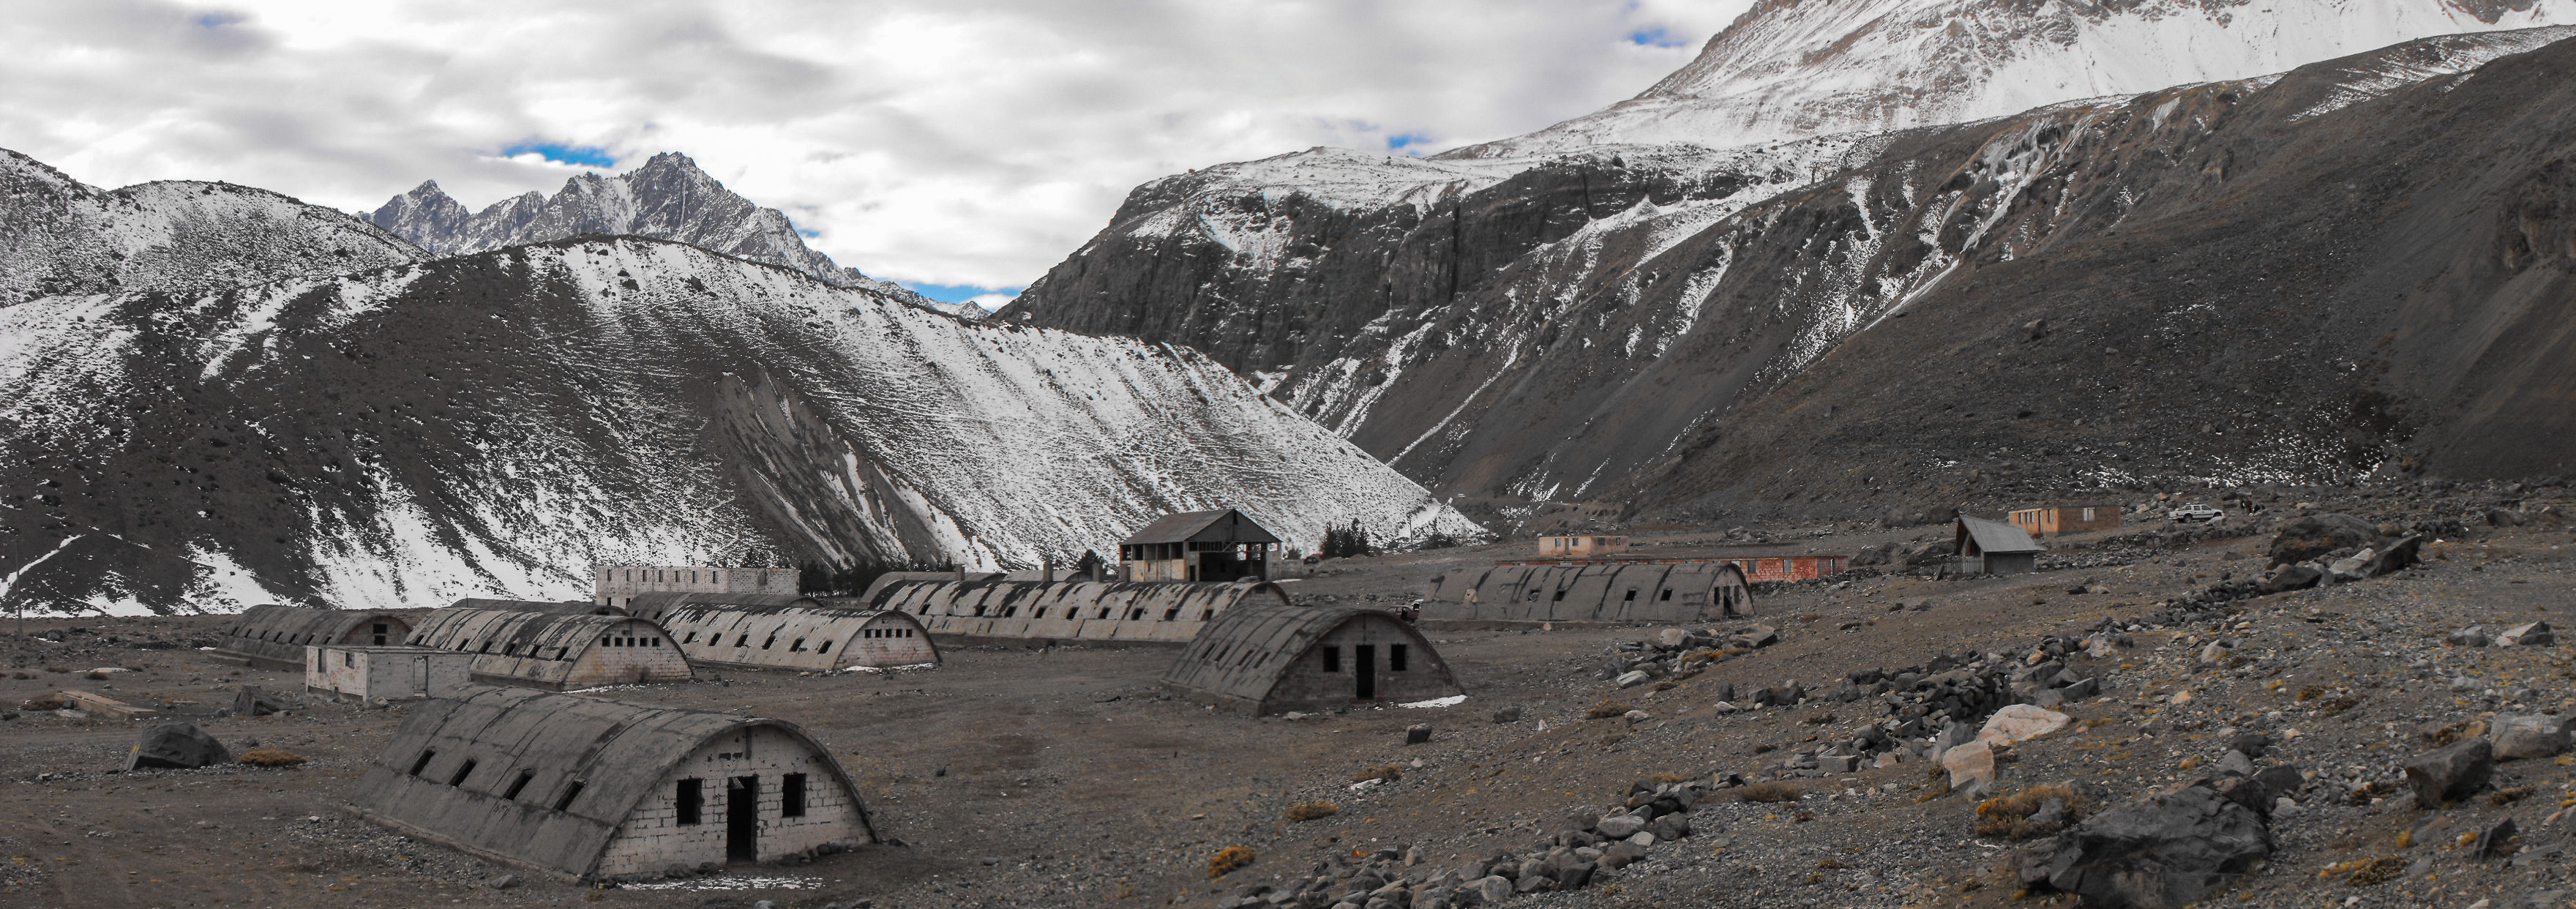 Campamento minero abandonado - Flickr - Casper Abrilot